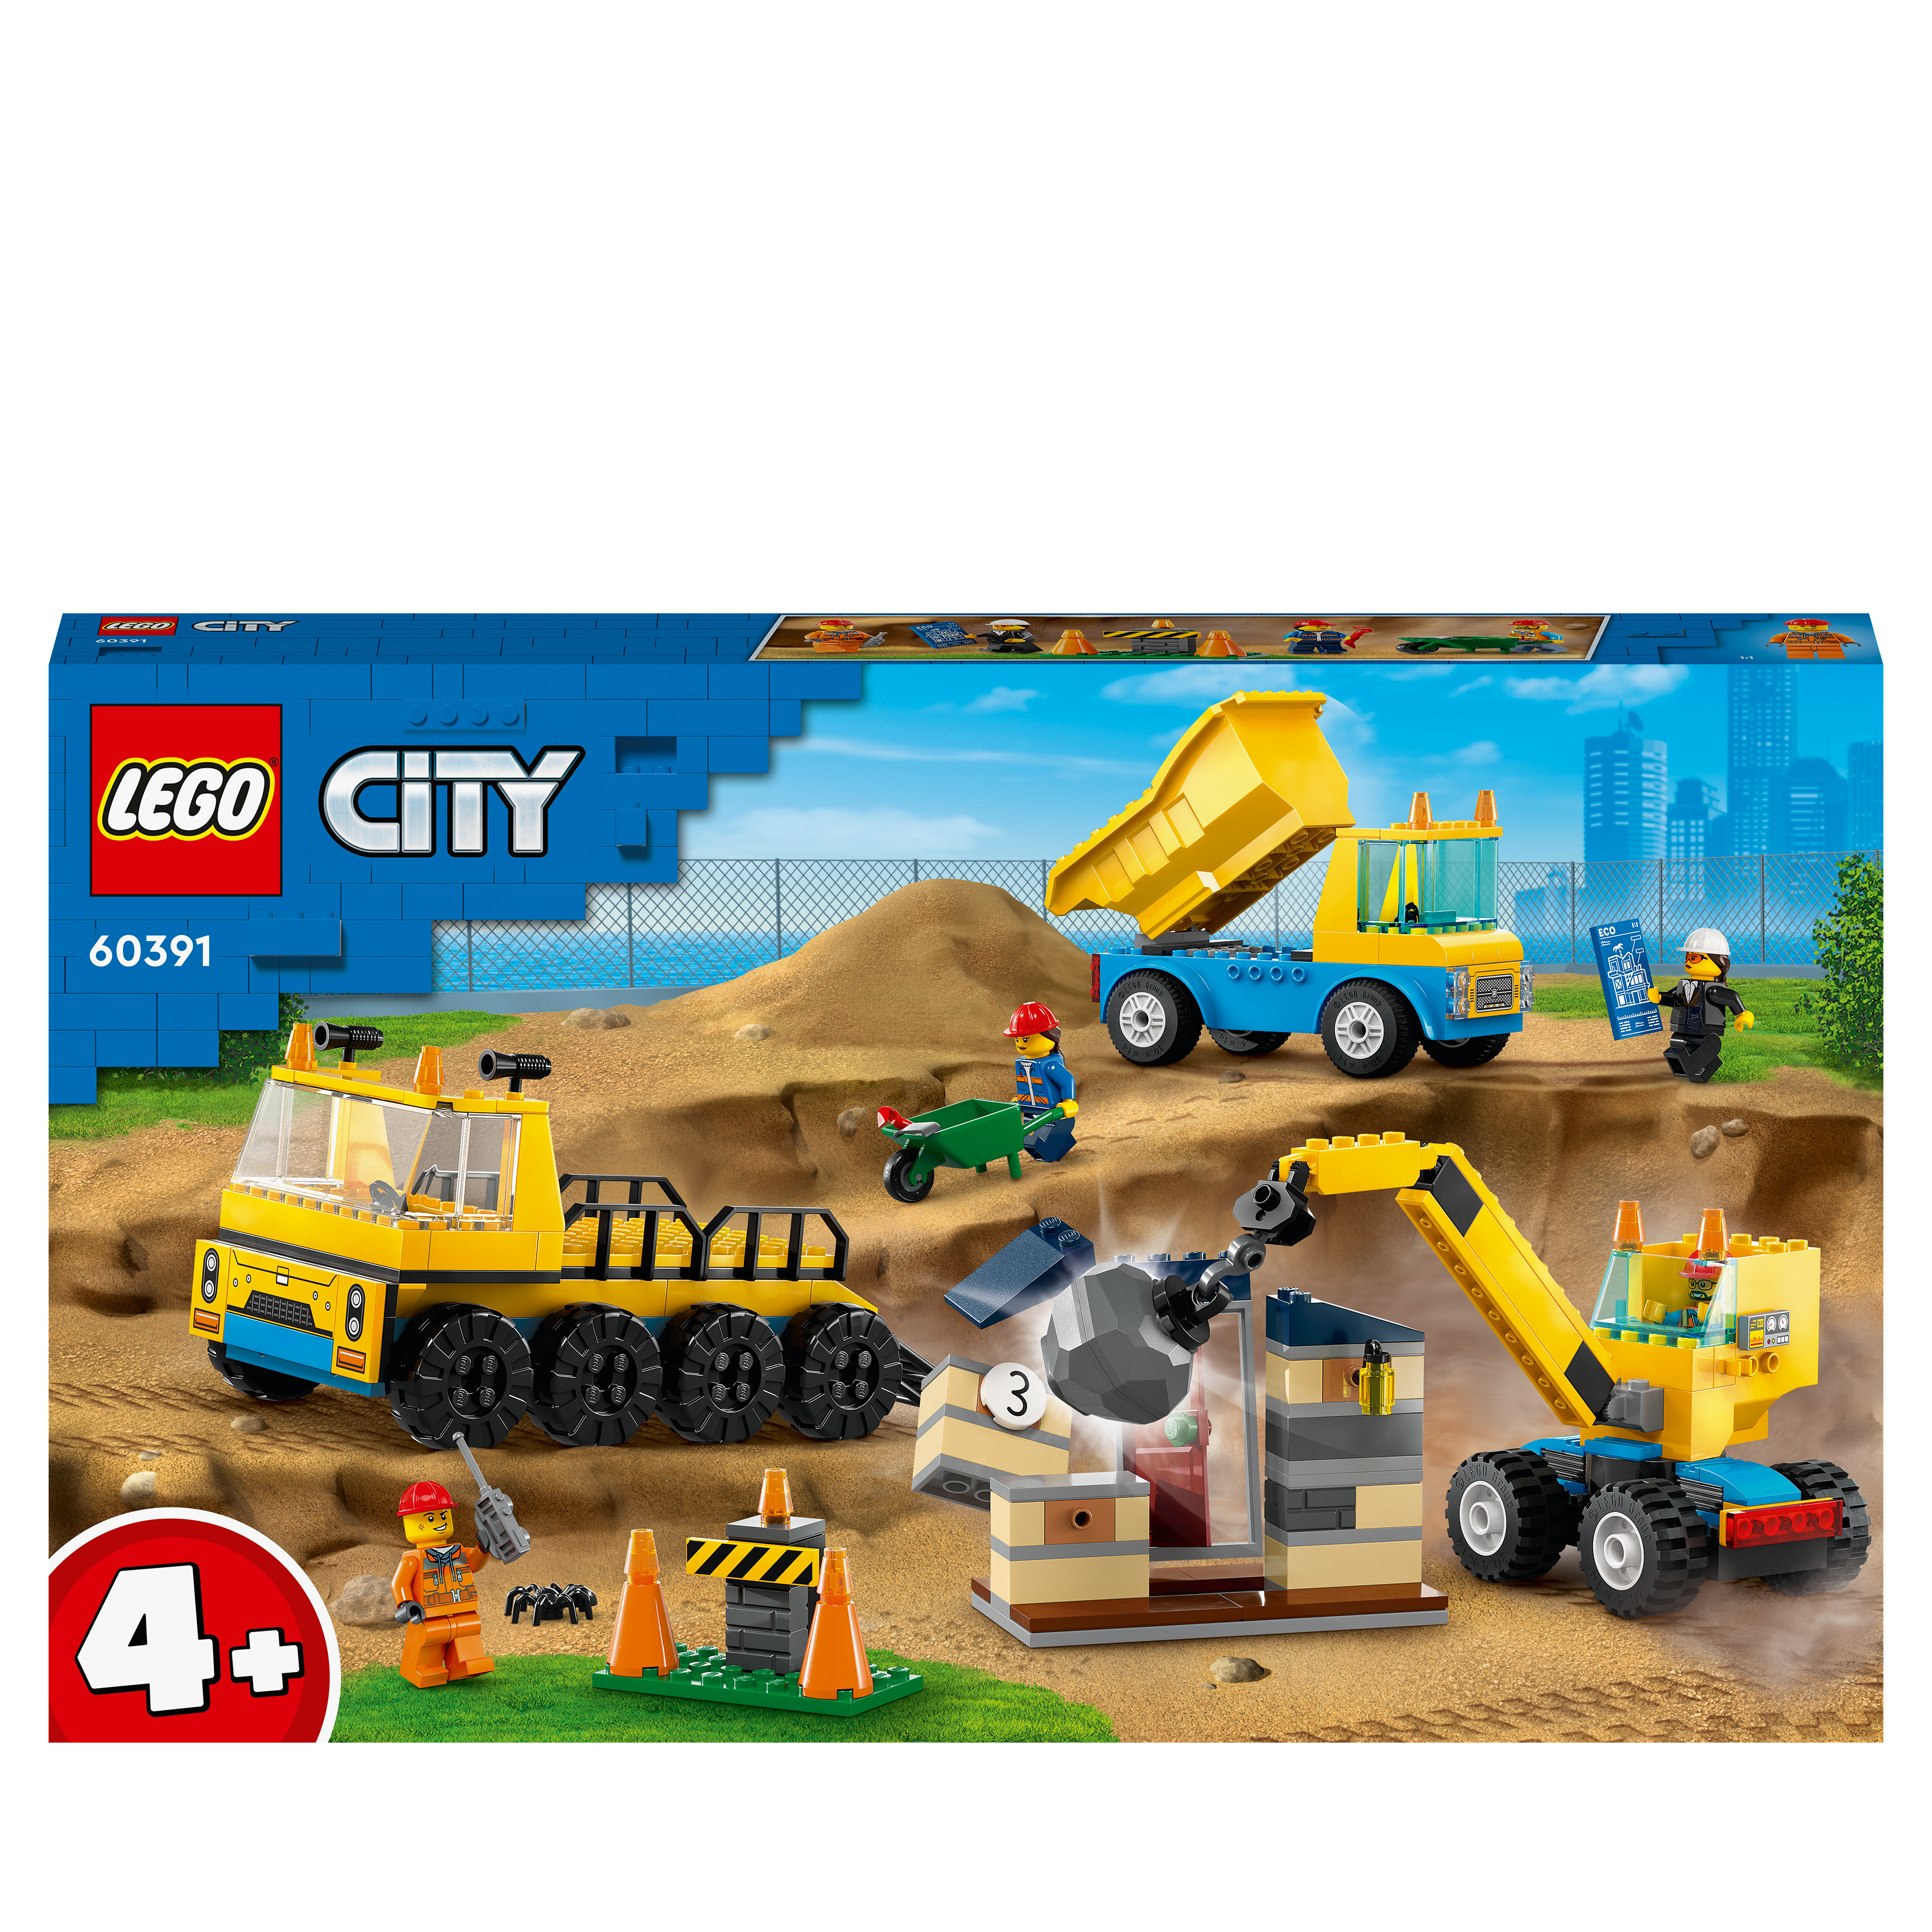 LEGO City 60391 Kran Mehrfarbig und Bausatz, Abrissbirne mit Baufahrzeuge